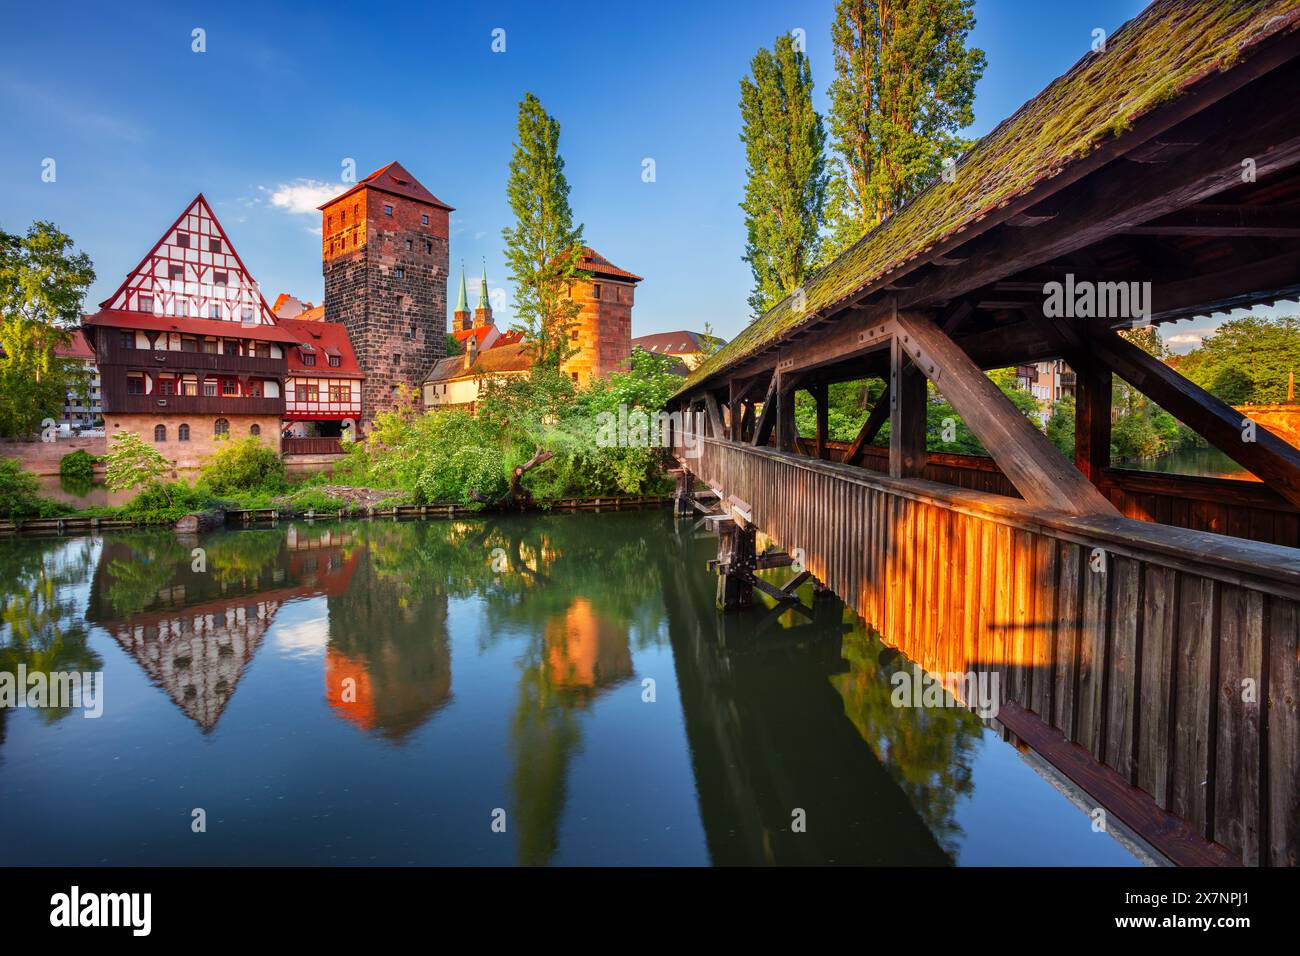 Nuremberg, Allemagne. Image de paysage urbain de la vieille ville de Nuremberg, Bavière, Allemagne au beau coucher de soleil de printemps. Banque D'Images